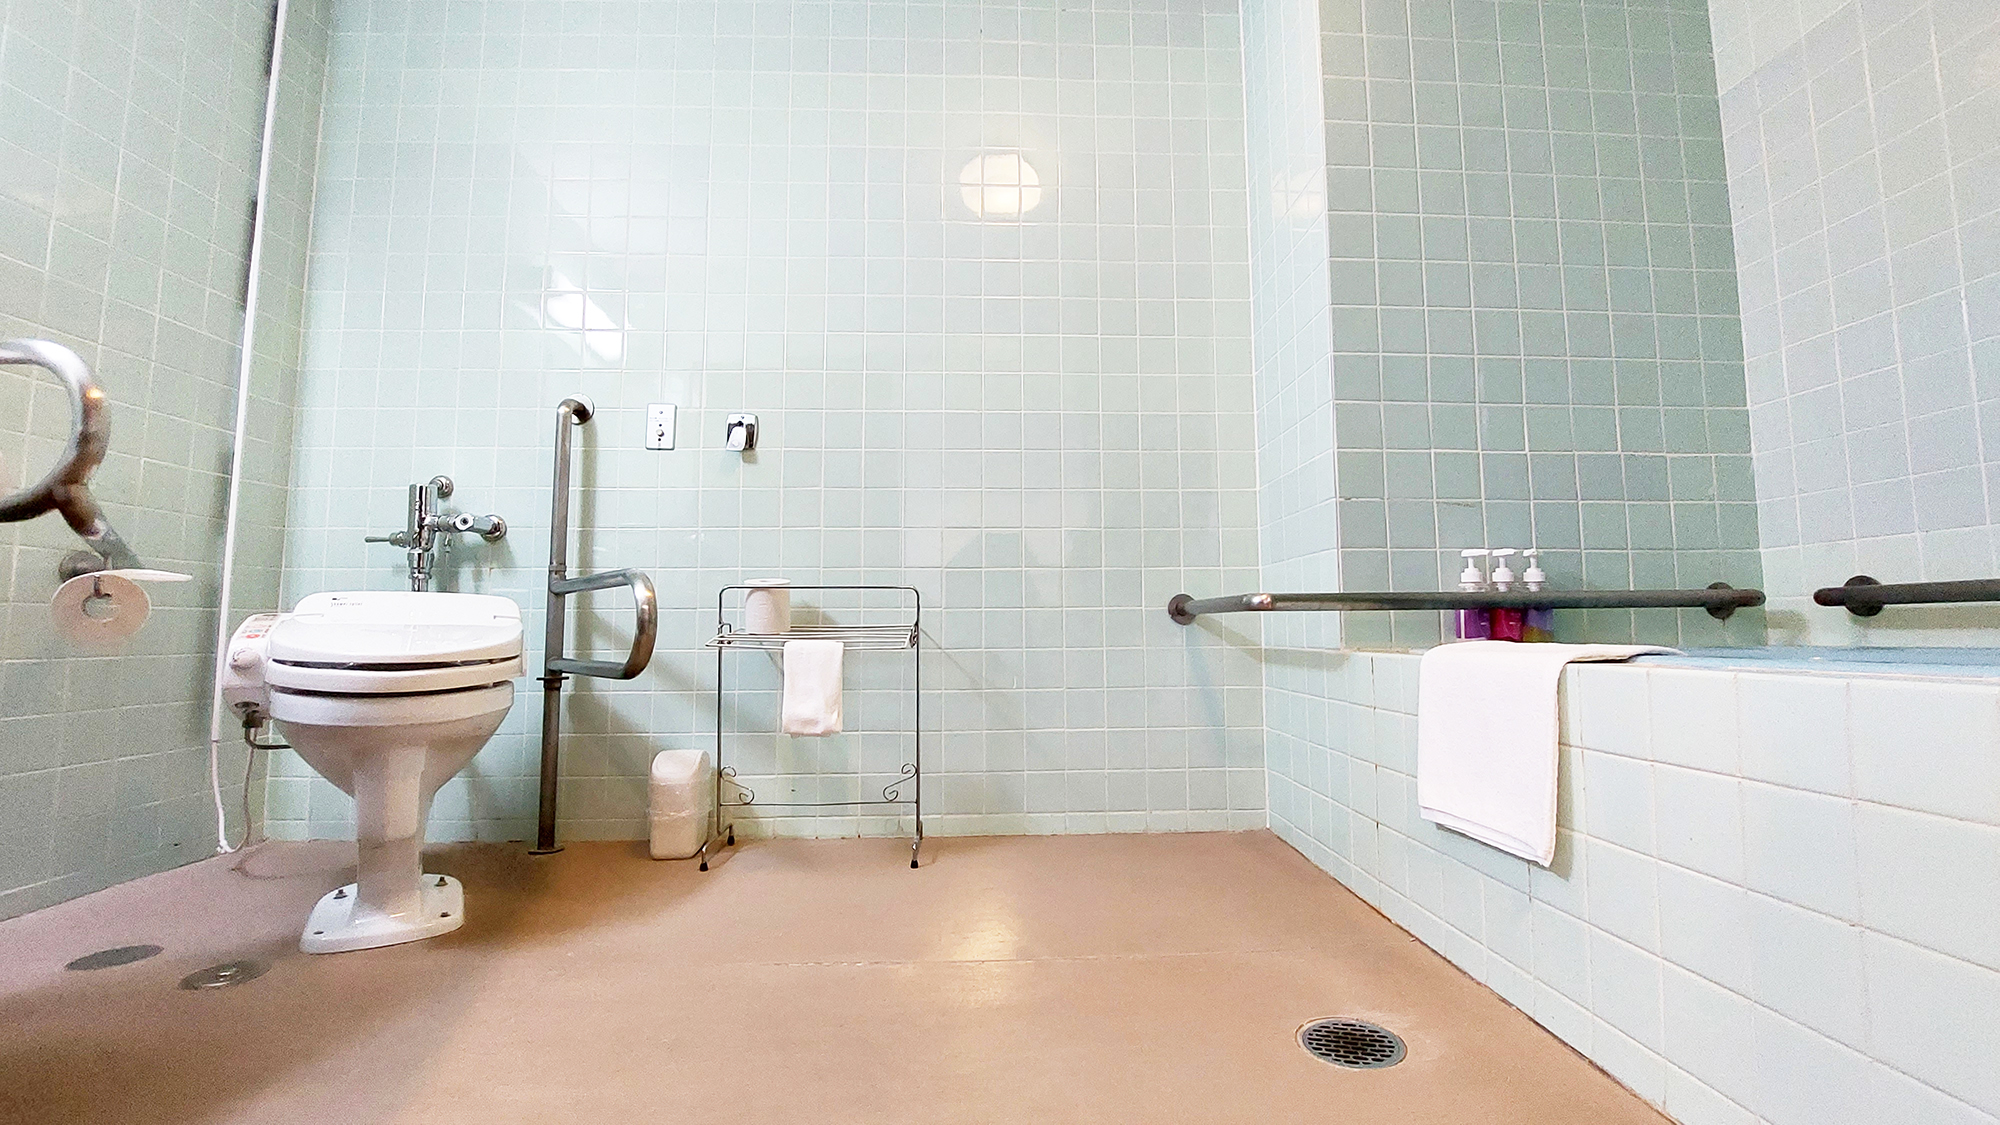 【洋室ツイン】シャワールームとバリアフリー型洋式トイレが付いたお部屋です